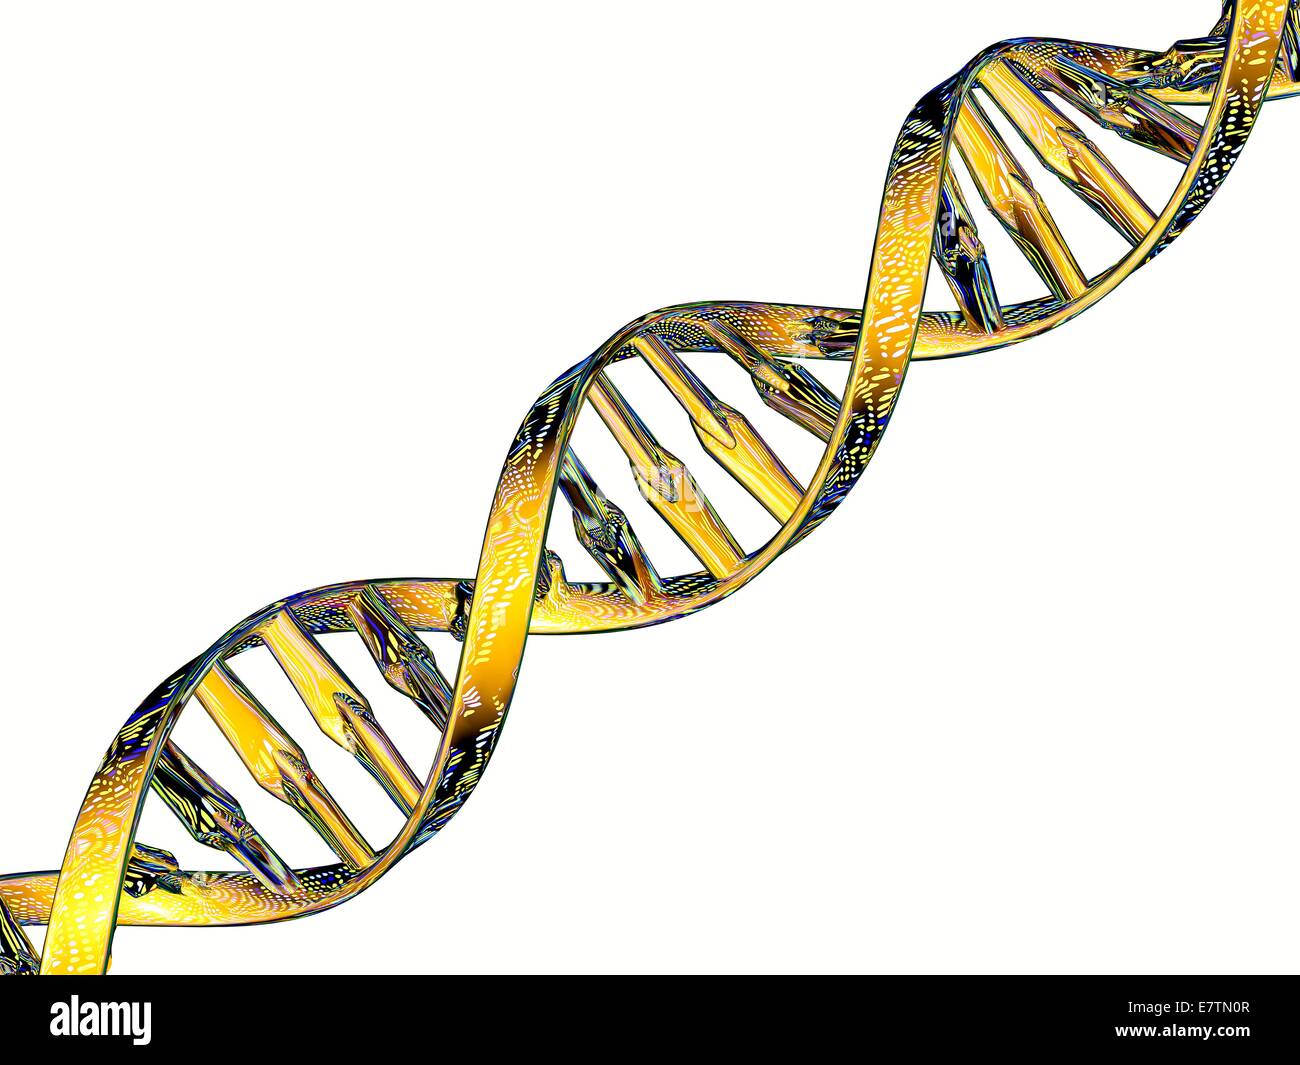 DNA-Doppelhelix ein DNA-Microarray widerspiegelt. Microarray-Technologie ermöglicht Biologen Studie tausender Gene gleichzeitig. Ein Array von DNA-Sequenzen für einen bestimmten Satz von Genen wird erstellt und an eine unterstützende Folie oder Chip befestigt. Proben von genetischem material Stockfoto